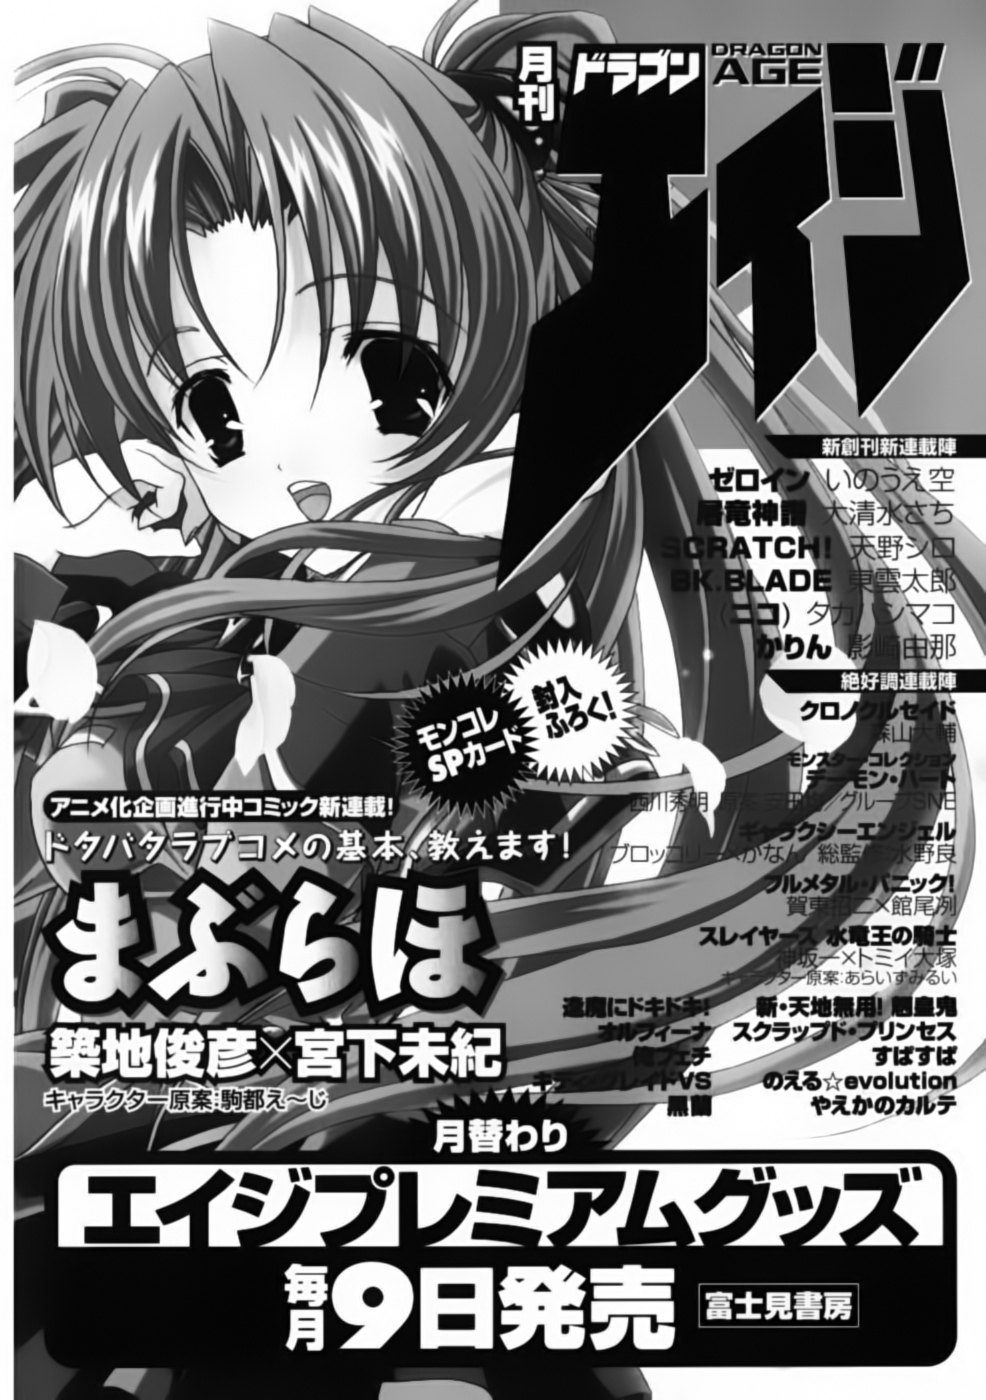 [Manga] Chrono Crusade CHRNO-CRUSADE-01-182